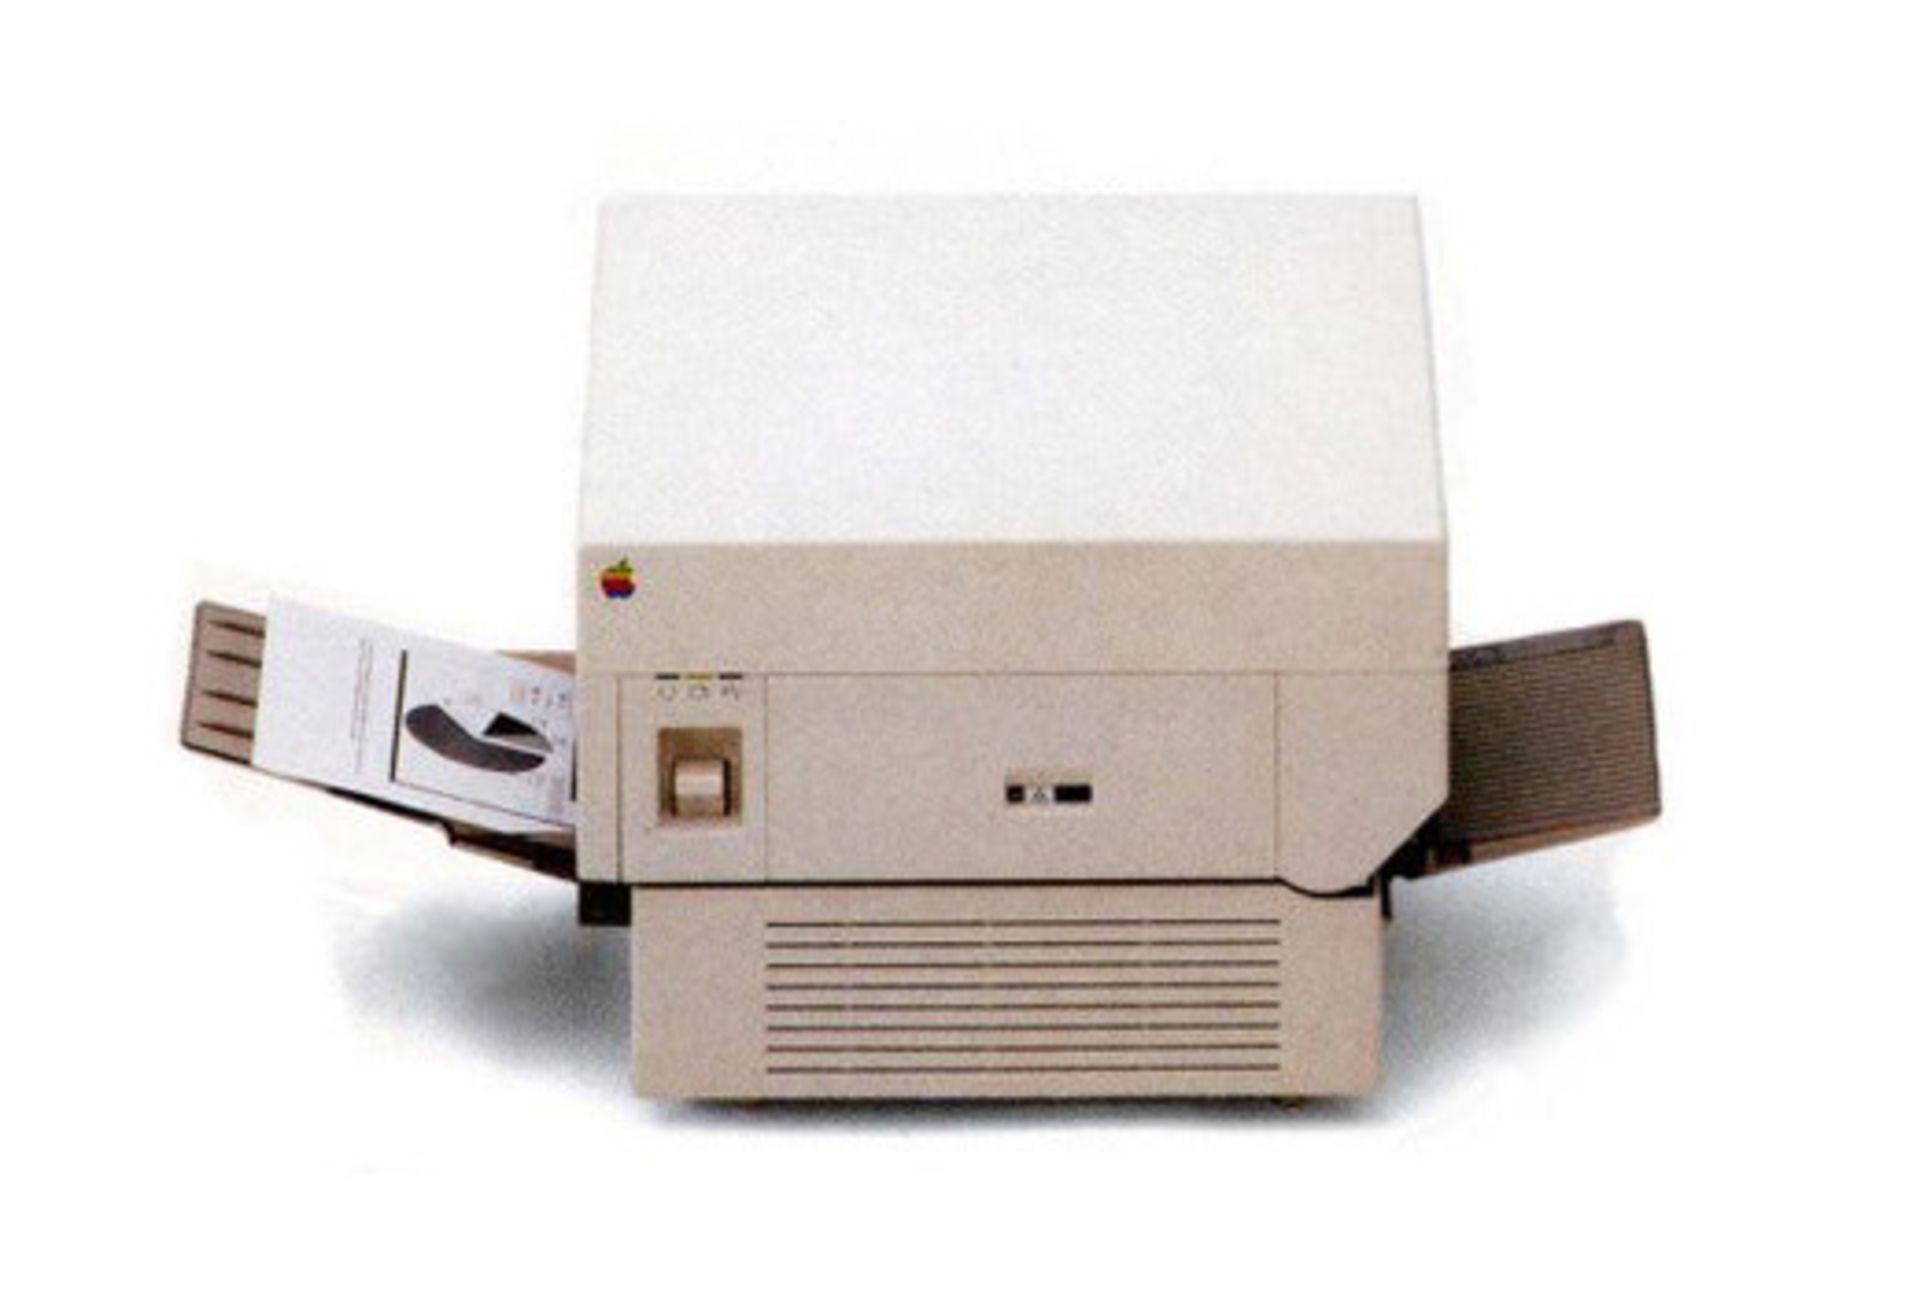 مرجع متخصصين ايران پرينتر ليزري اپل Apple LaserWriter Printer